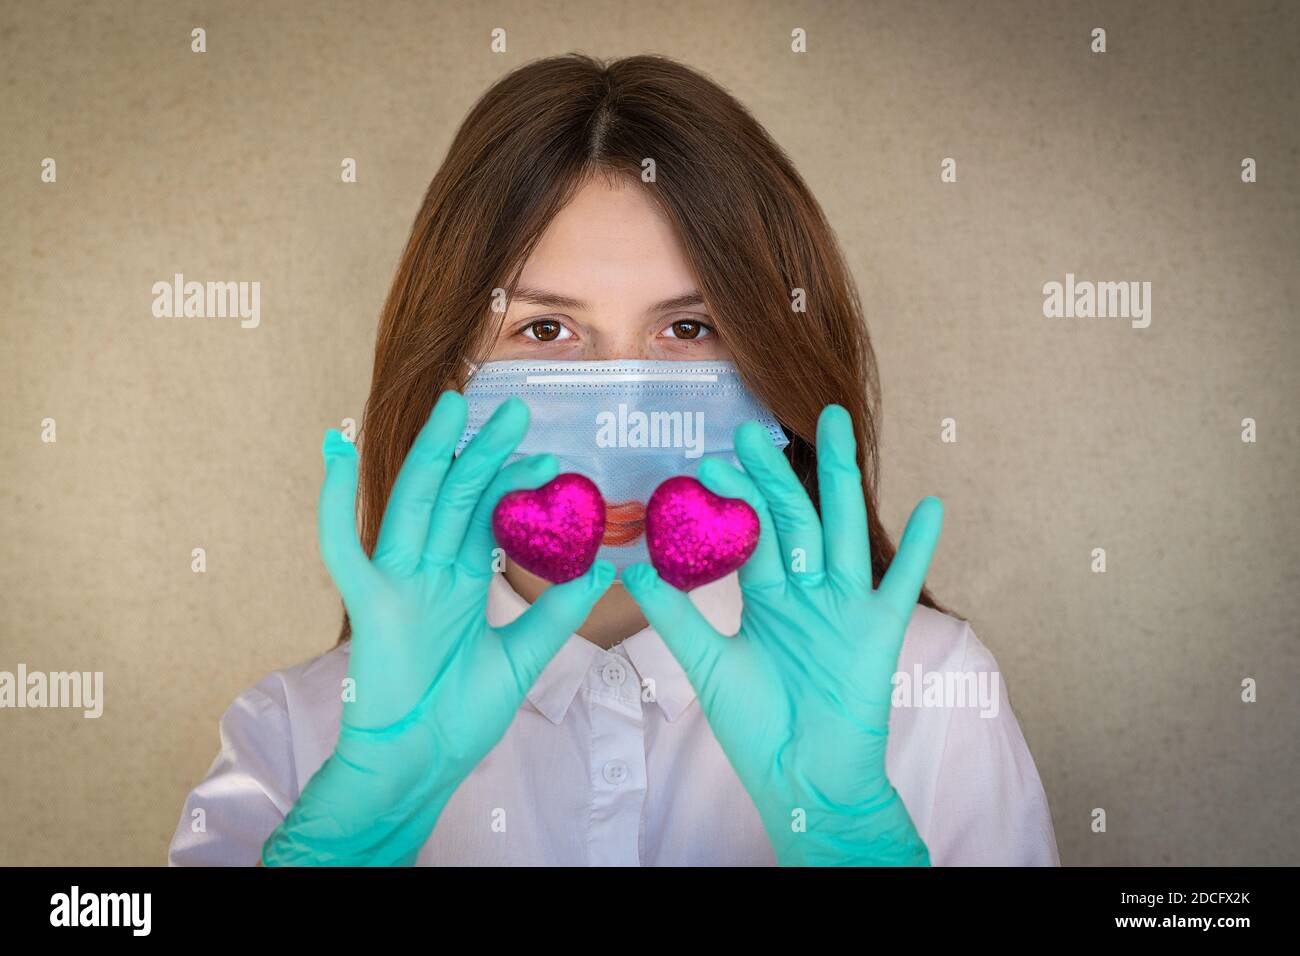 Ein dunkelhaariges Mädchen von 14-15 Jahren, das eine medizinische Maske und Handschuhe trägt, hält zwei scharlachrote Herzen vor sich. Selektiver Fokus Stockfoto